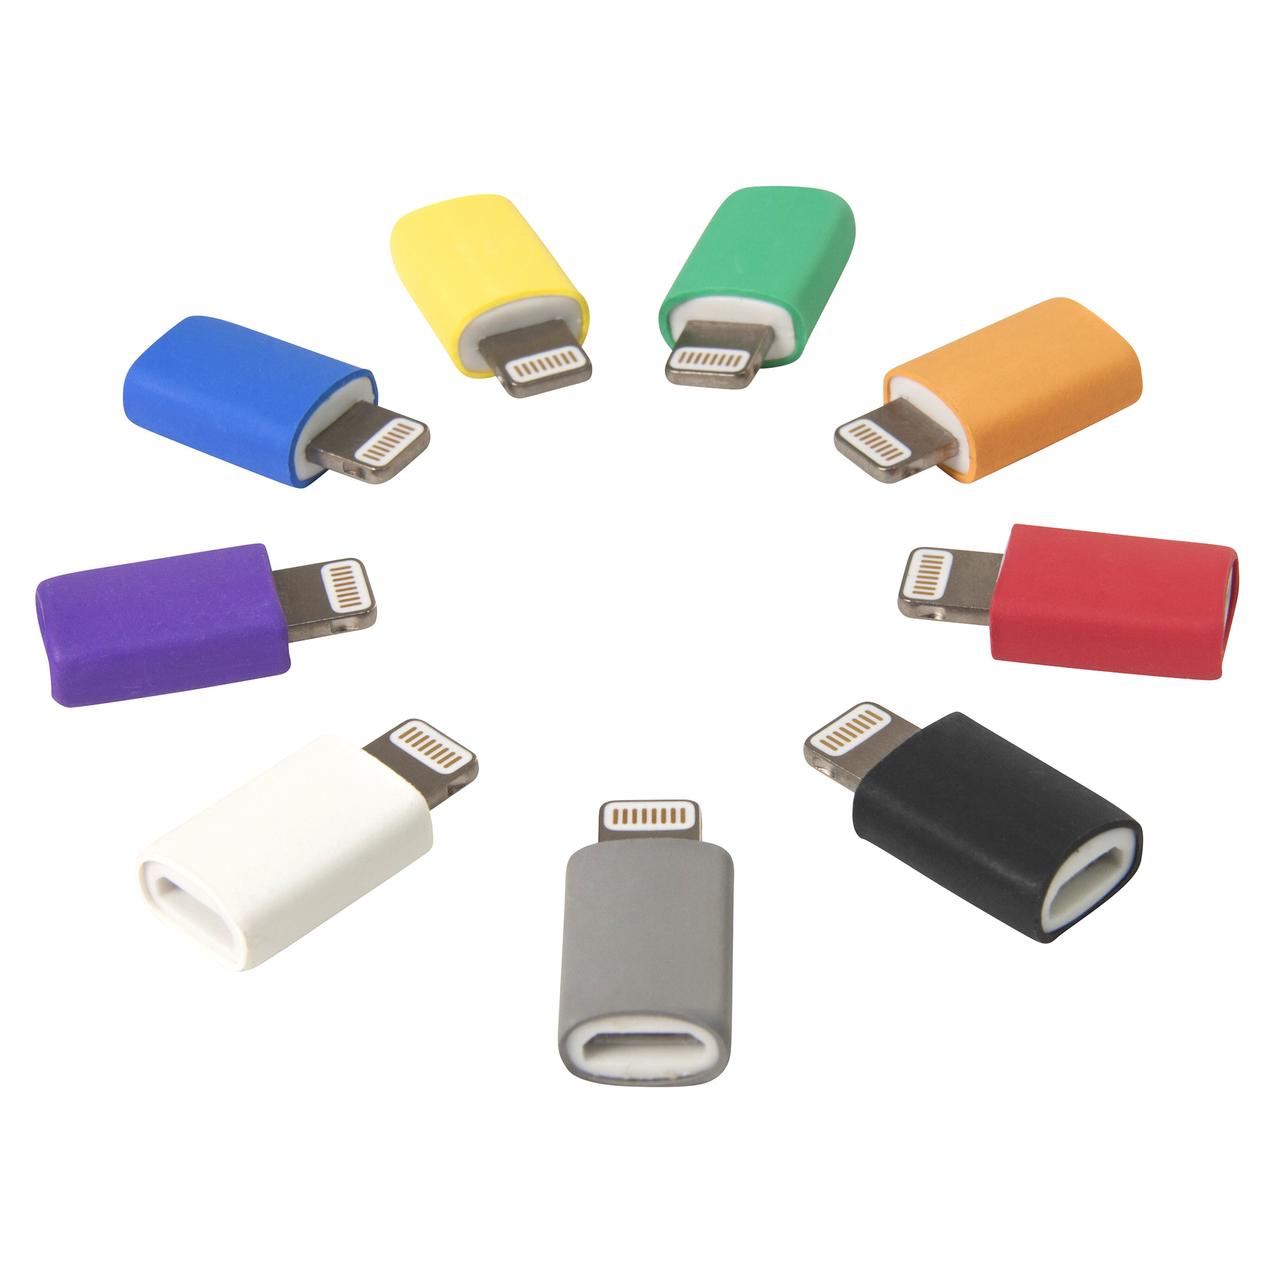 Lightning Adapter für iPhone für Micro USB Kabel in vielen bunten Farben